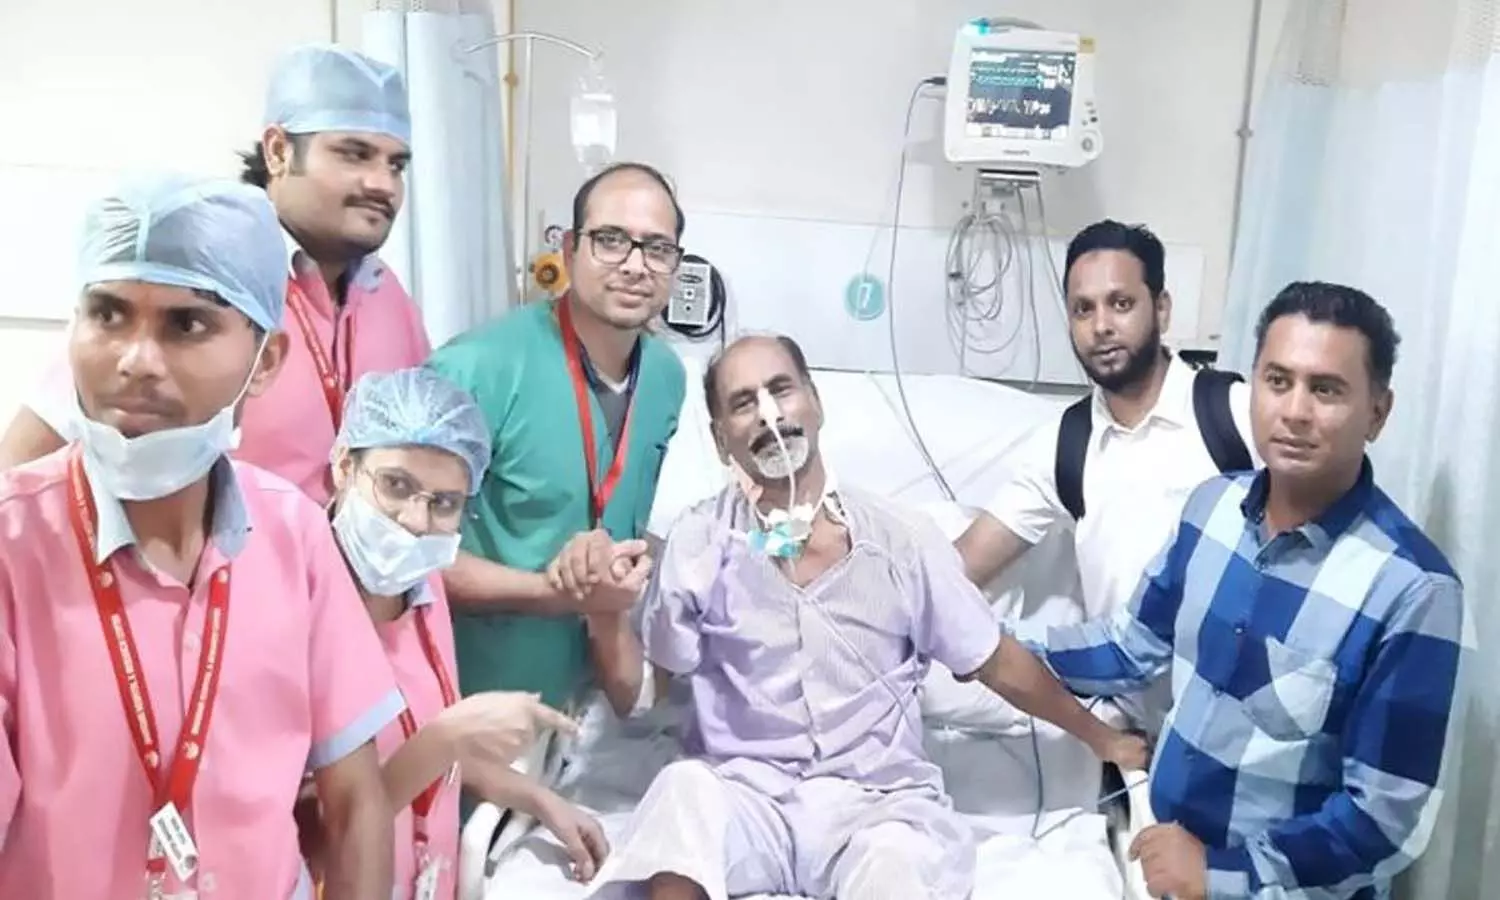 एनआरआई सम्मेलन में भाग लेने आए मारीशस के बिजनेसमैन हो गए थे गंभीर, इंदौर में 19 दिन उपचार कर बचाई जान